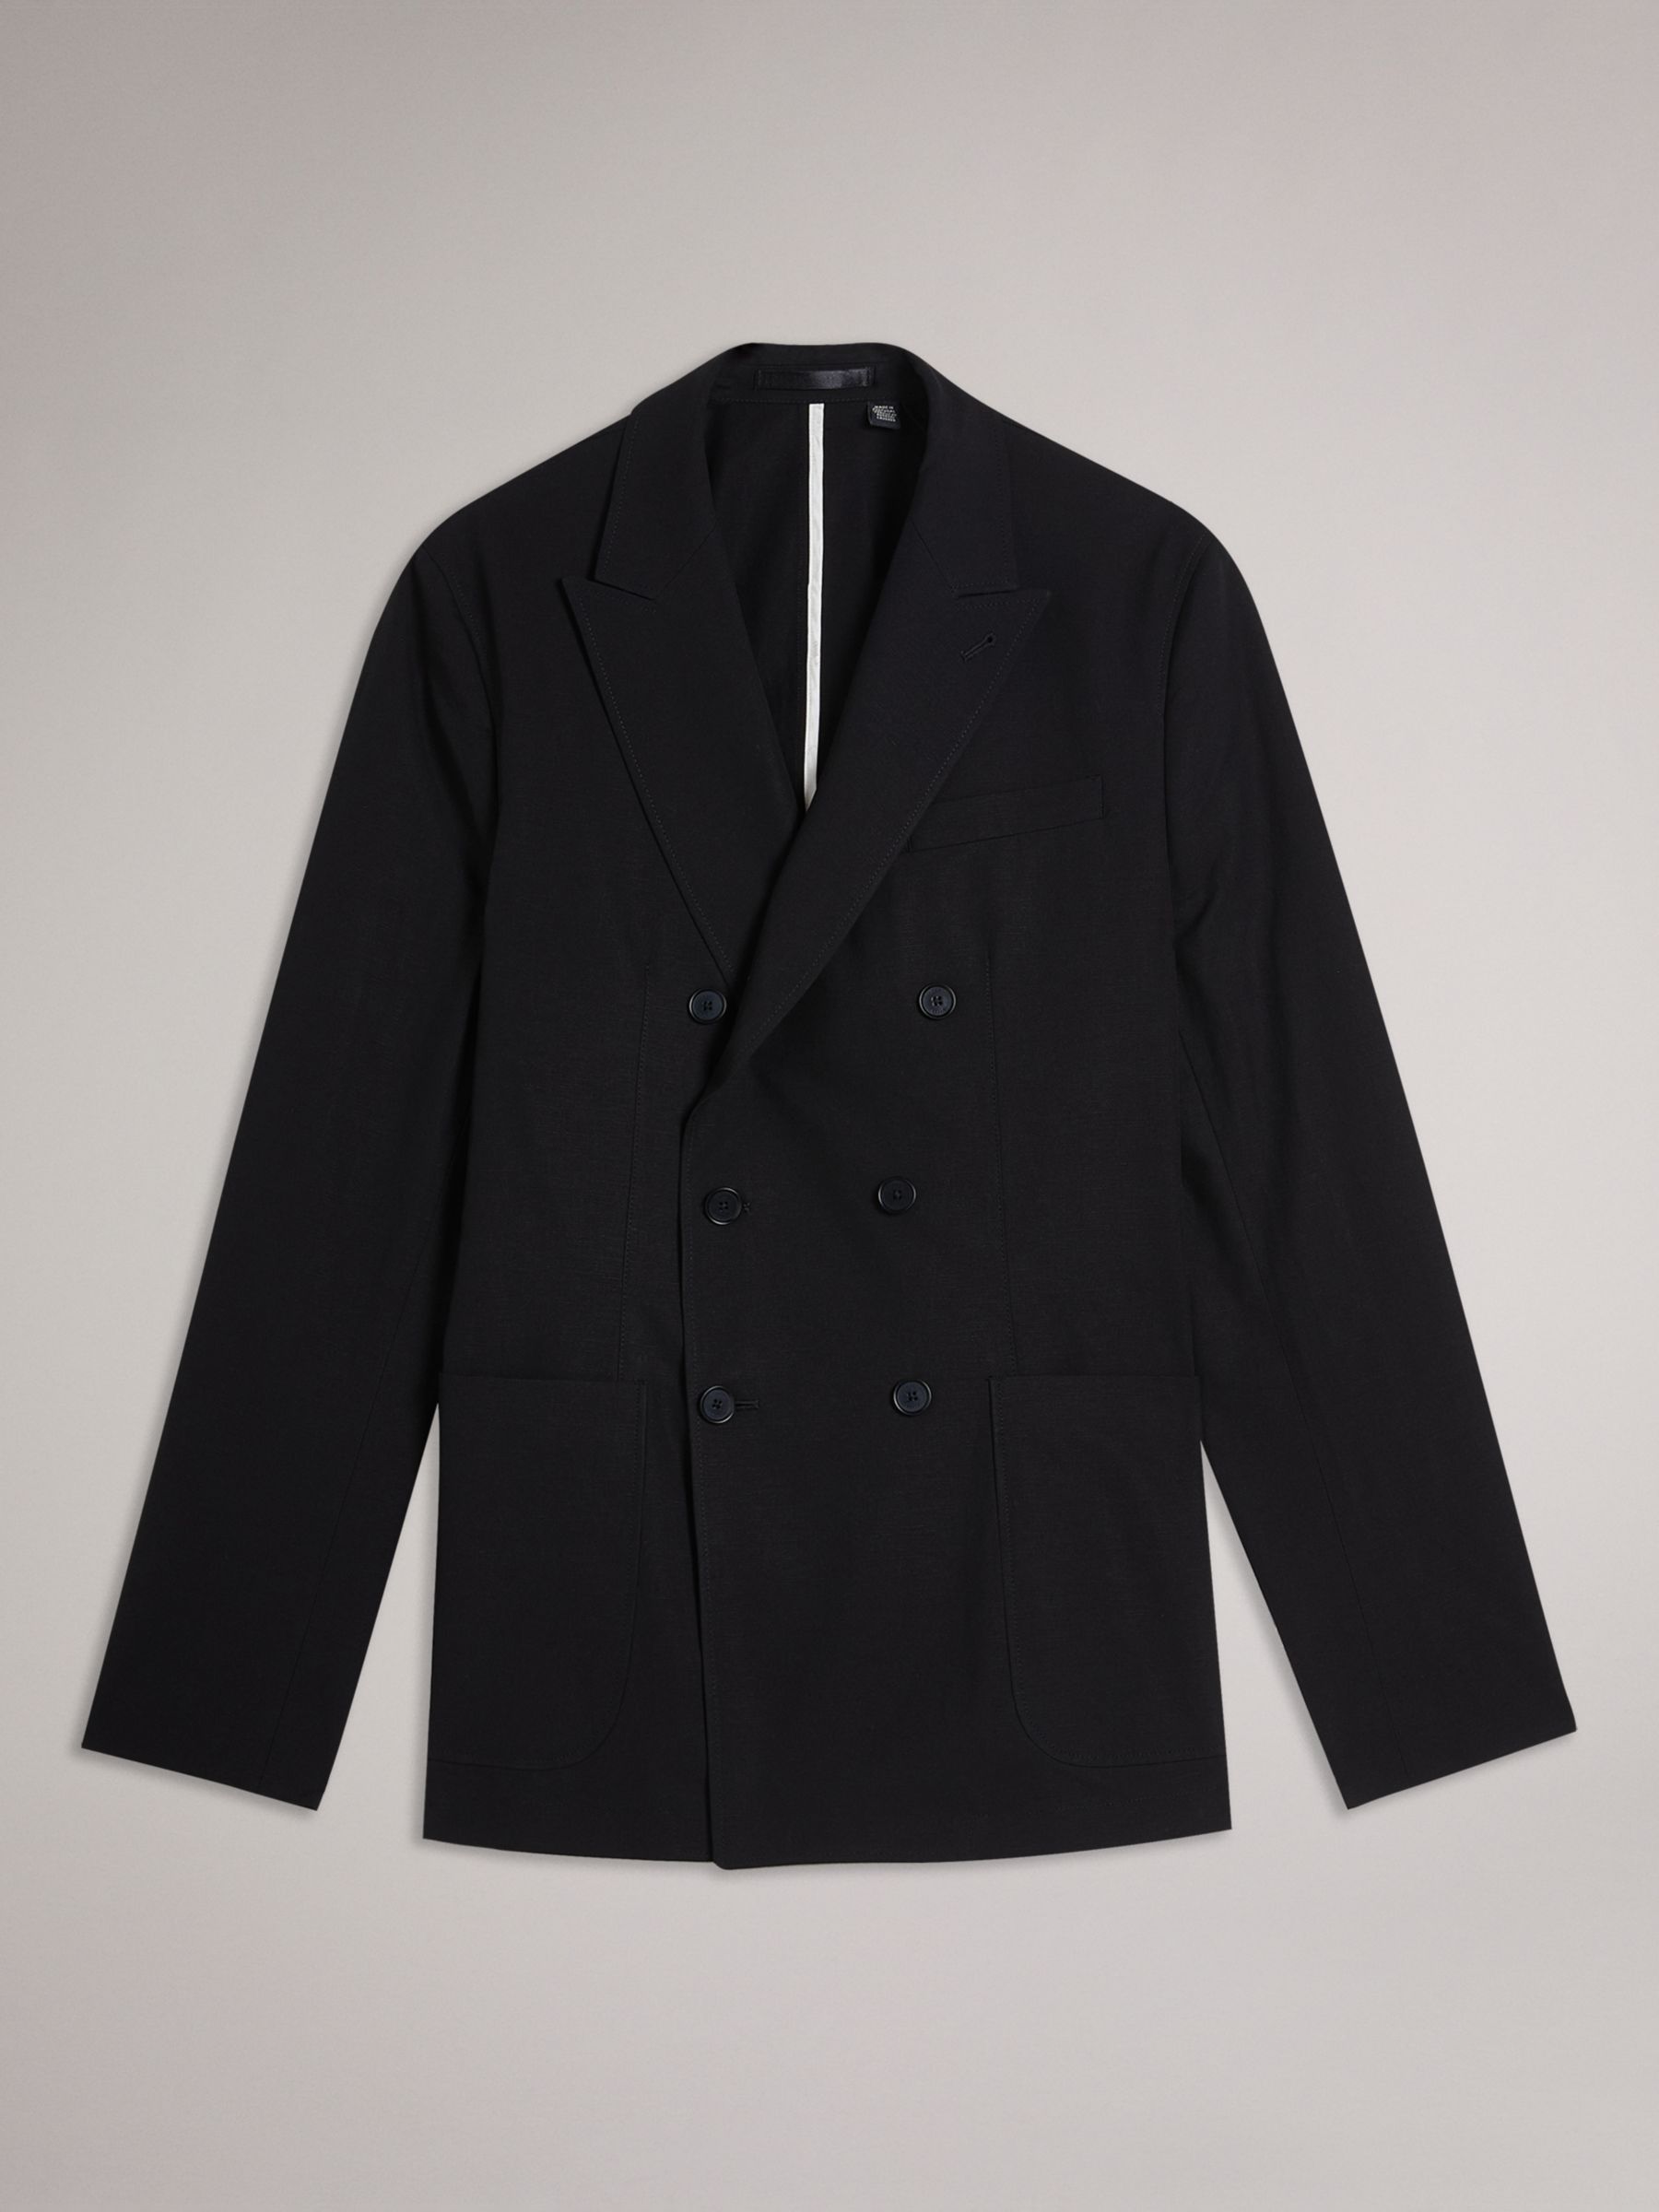 Buy Ted Baker Cleeve Linen Blend Slim Fit Jacket Online at johnlewis.com